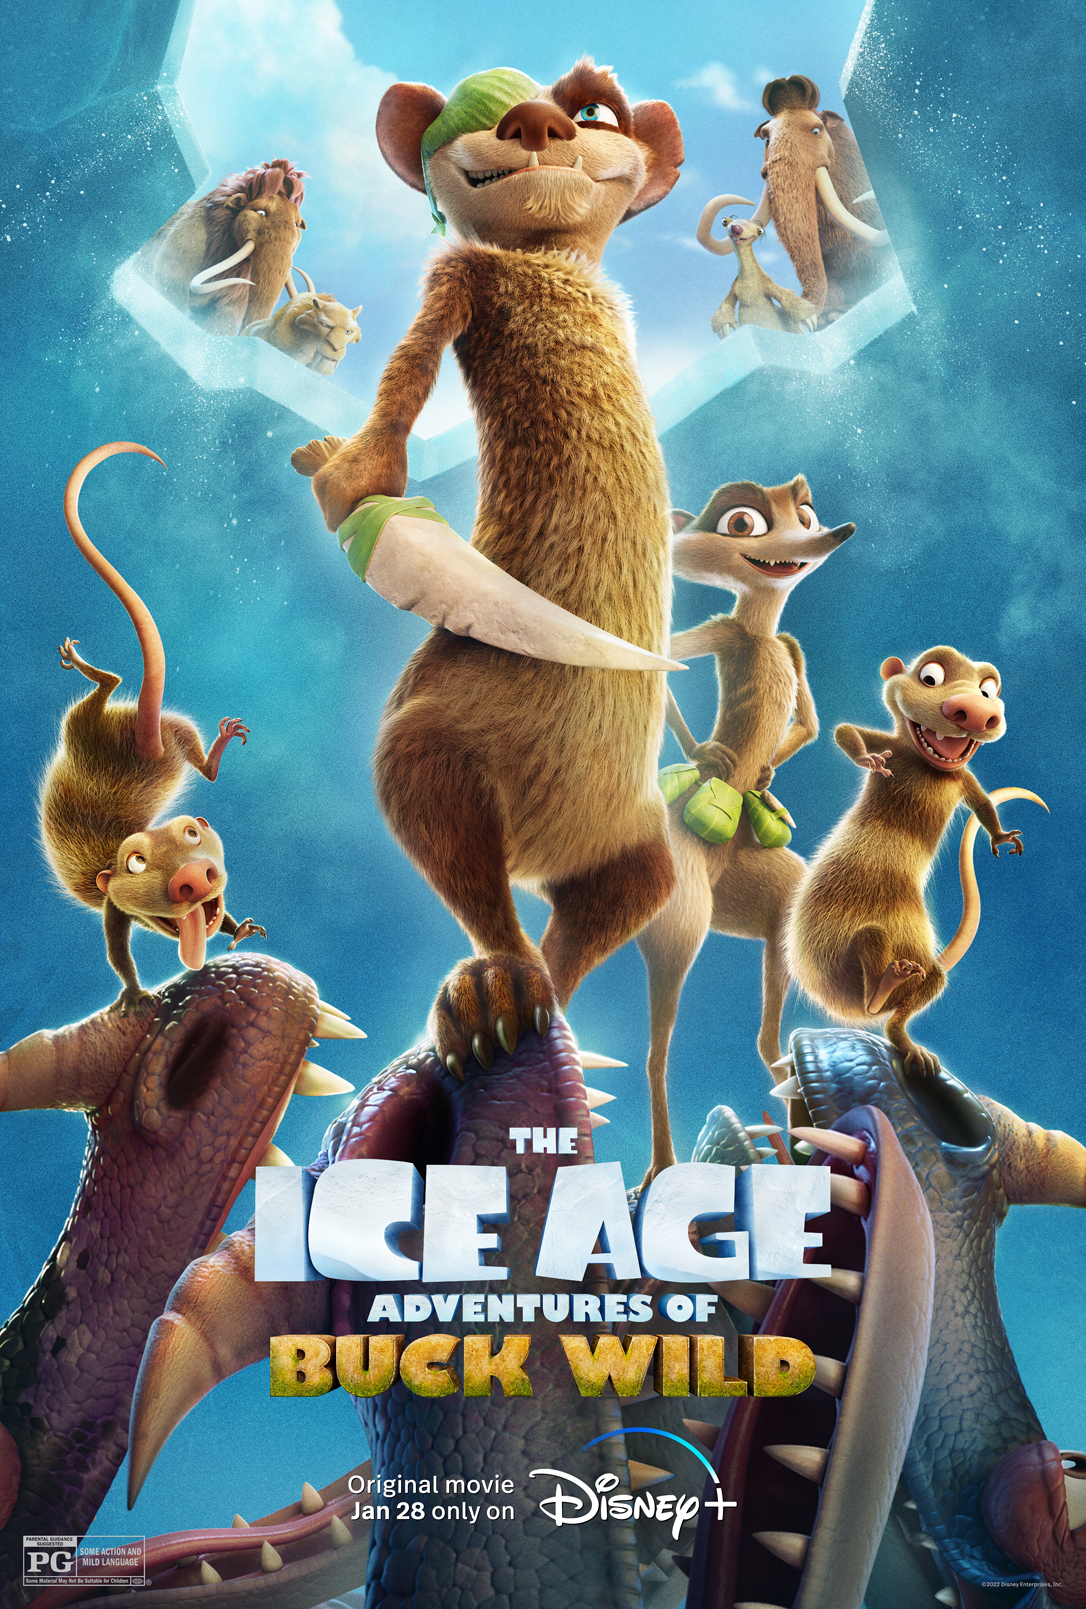 New Movie: THE ICE AGE ADVENTURES OF BUCK WILD